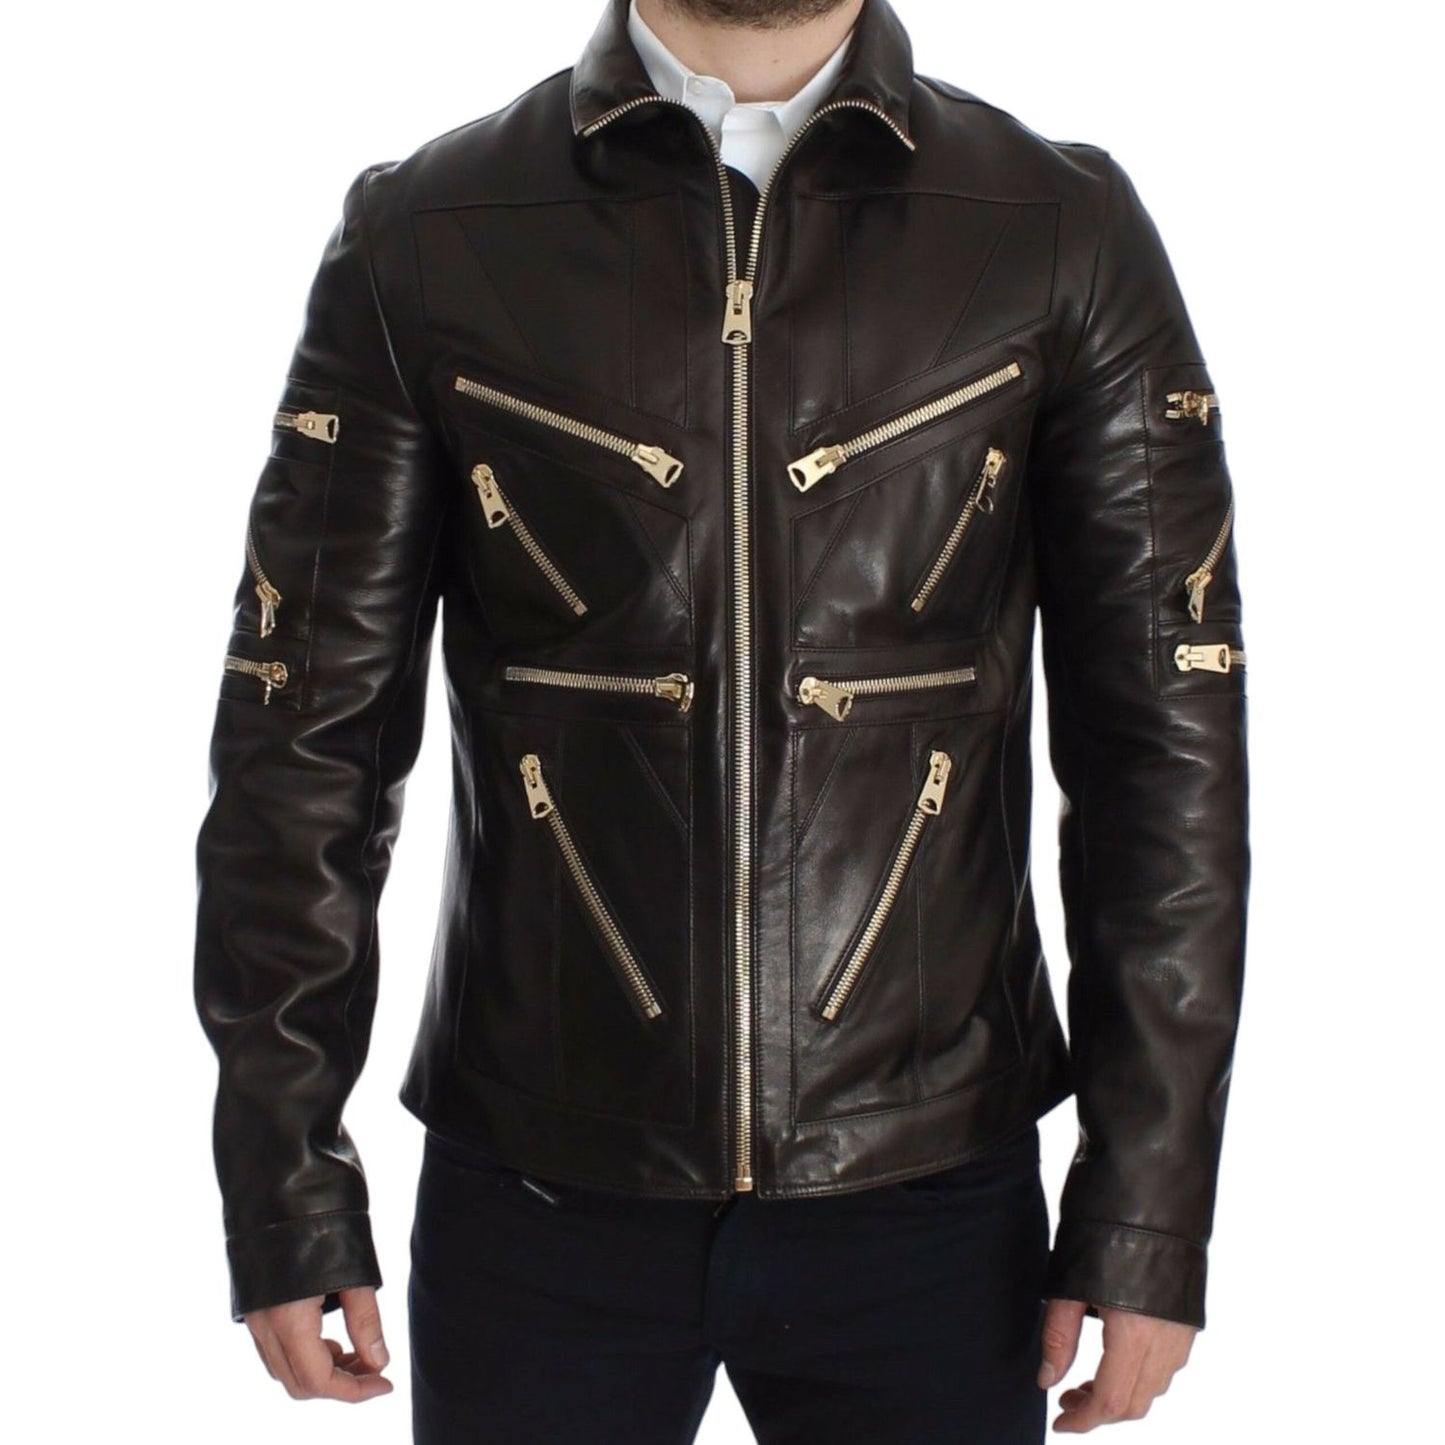 Dolce & Gabbana | Elegant Brown Gold-Detailed Leather Jacket| McRichard Designer Brands   